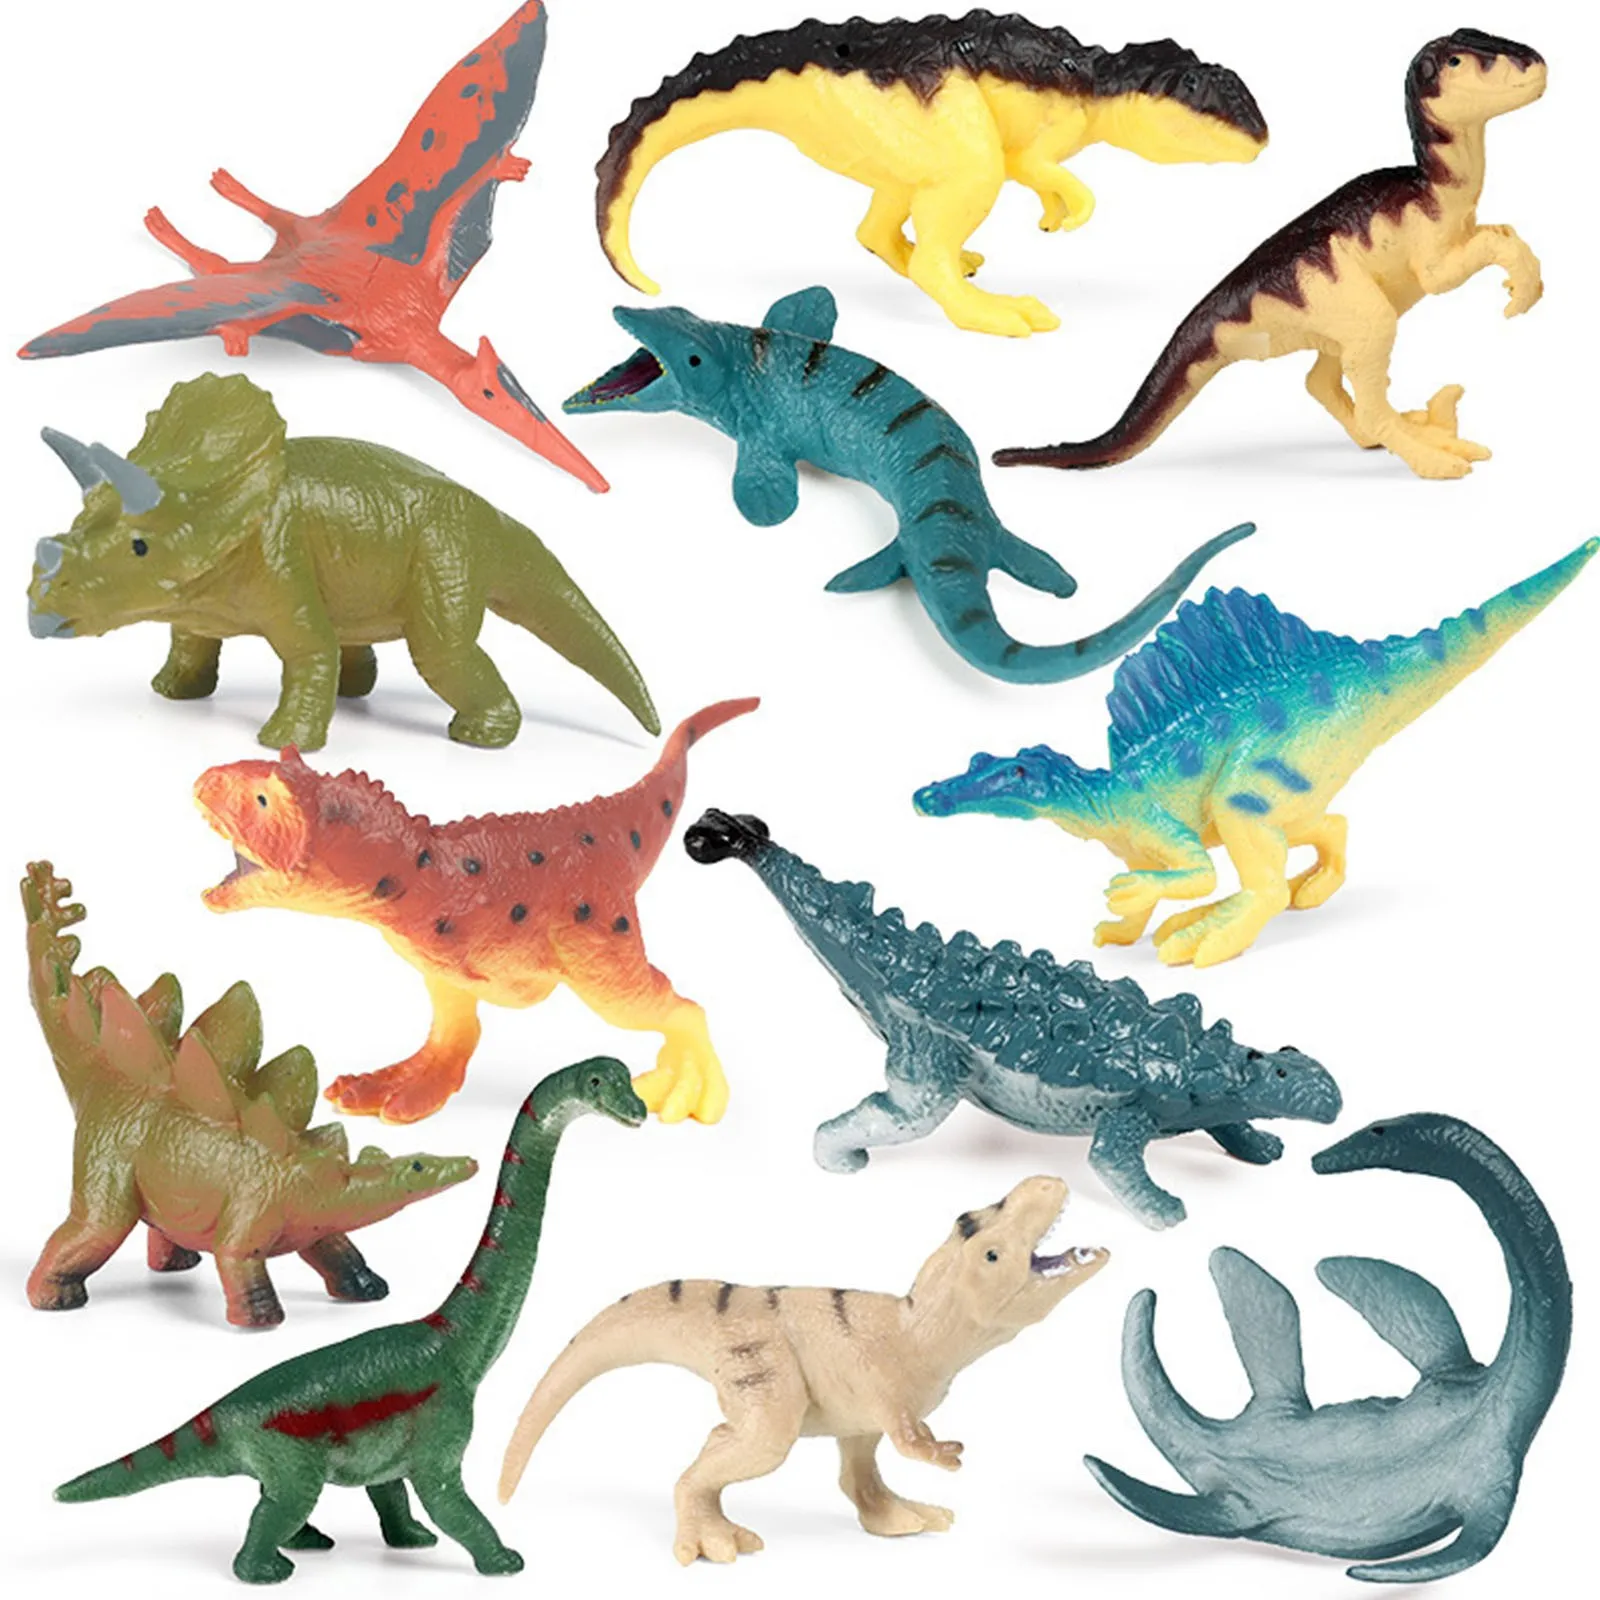 

4 шт. маленькие модели динозавров, игрушки, юрский периода, тираннозавр рекс, трицератопс, бронтозавр, модель динозавра, игрушки для детей